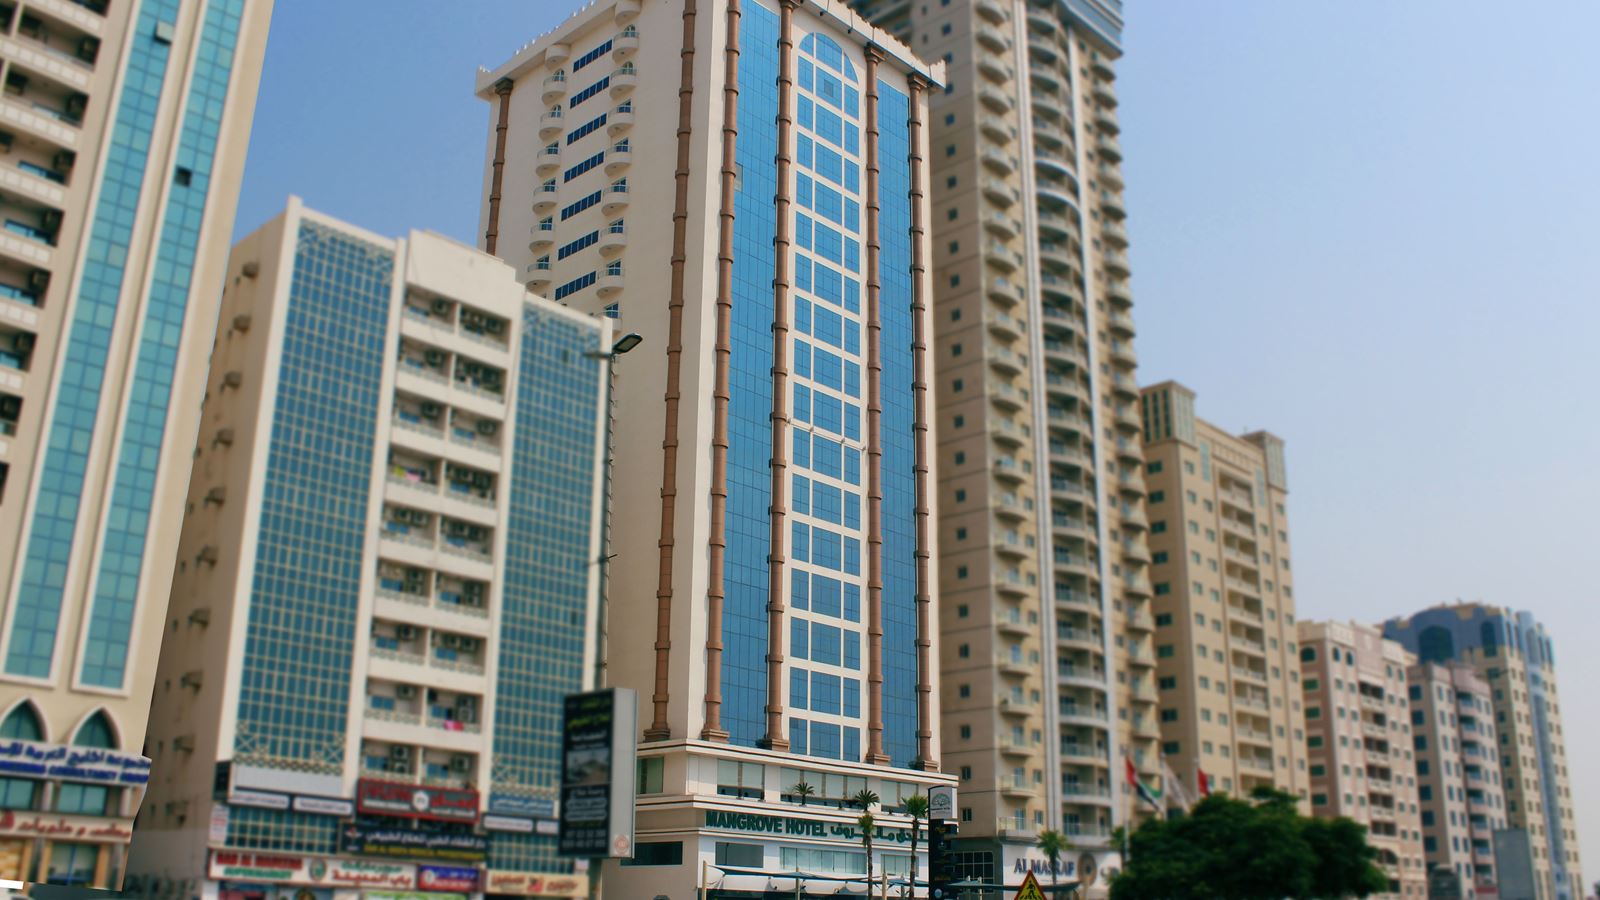 MANGROVE HOTEL RAS AL KHAIMAH